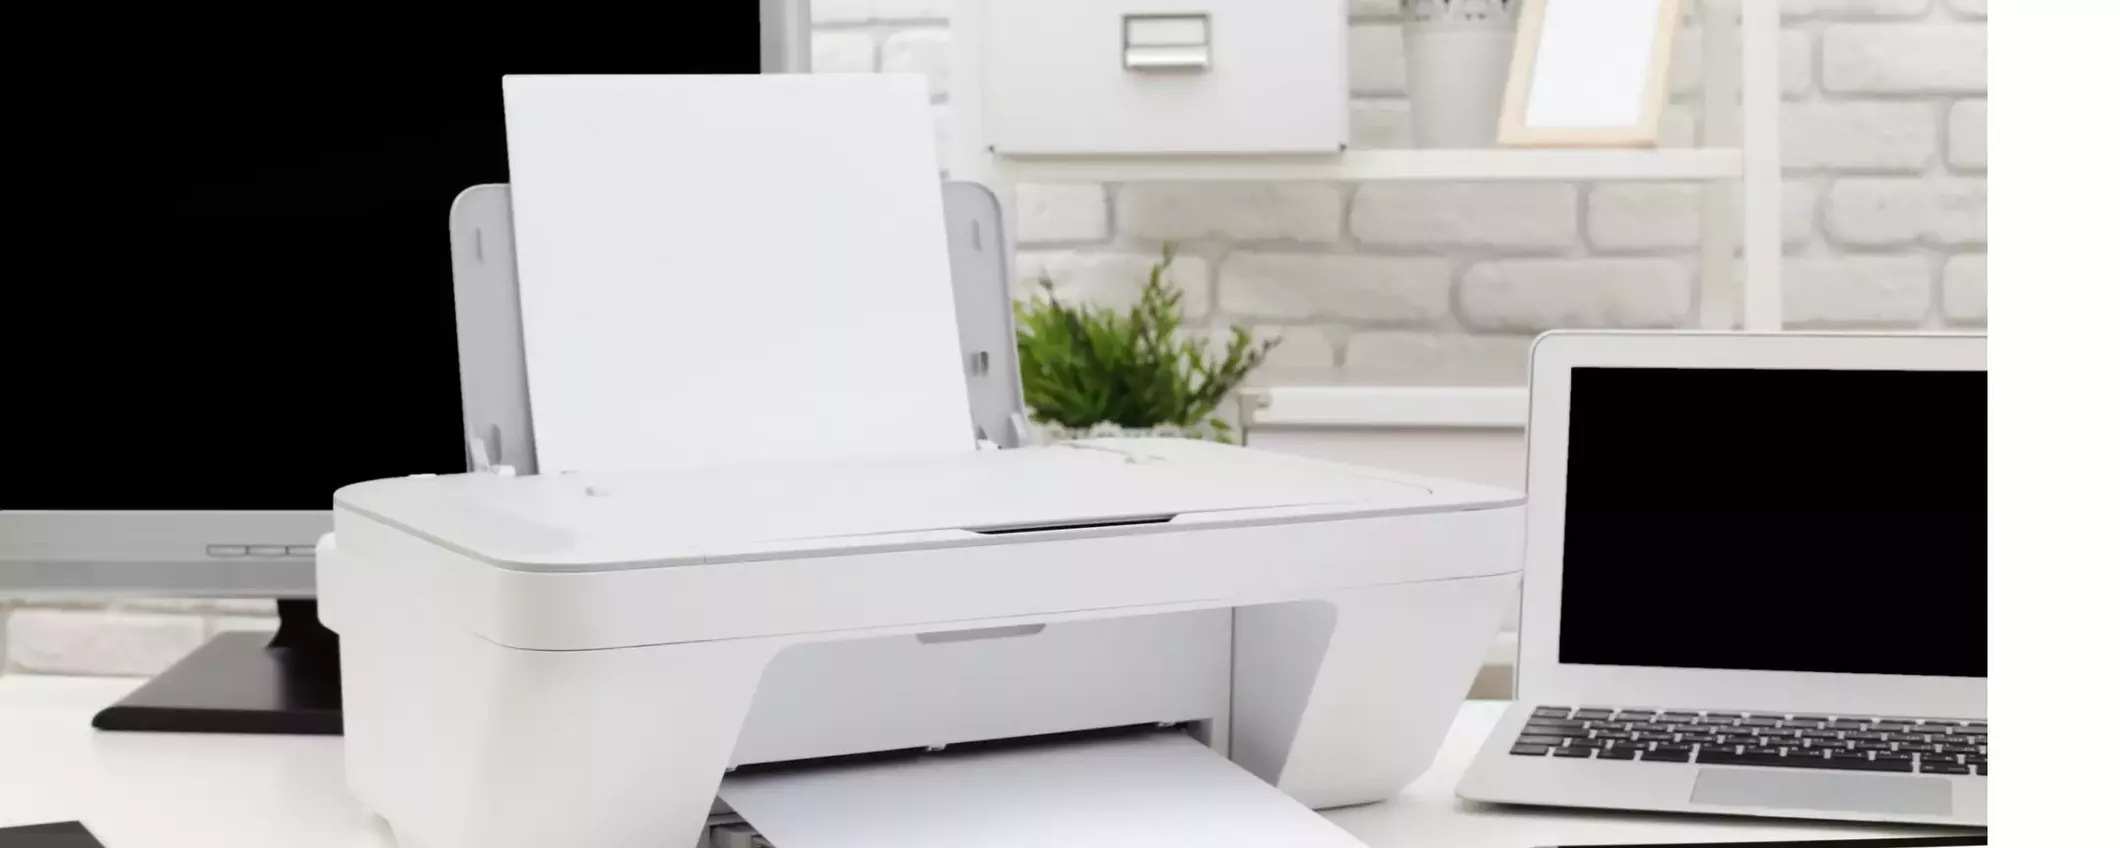 La migliore stampante laser WiFi per casa o ufficio